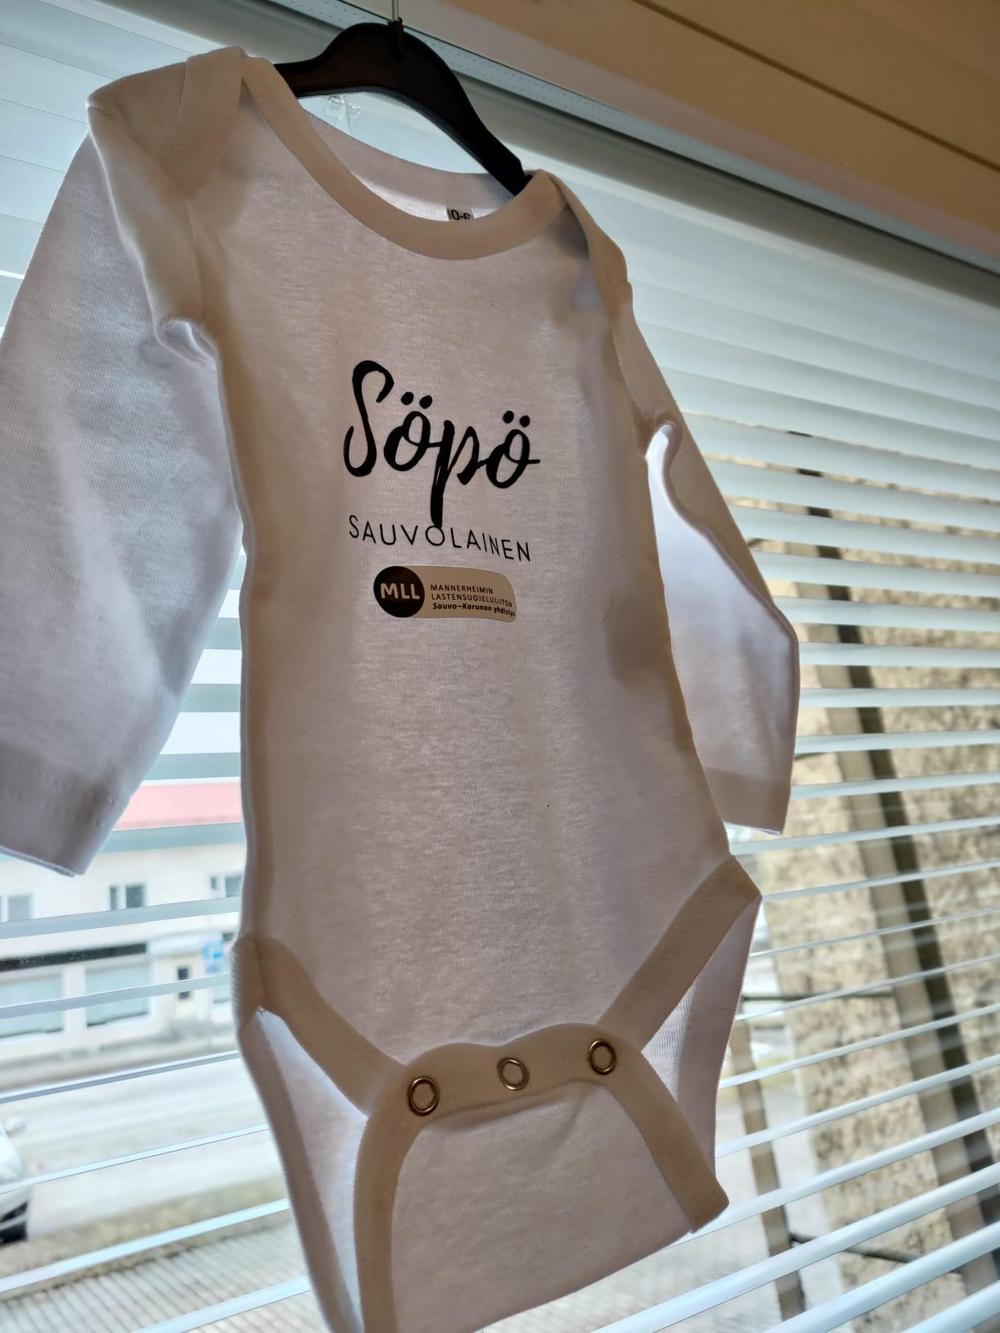 Kuvassa on valkoinen vauvanbody, jossa rinnassa on kaunokirjoituksella teksti: "Söpö sauvolainen" ja sen alla MLL Sauvo-Karunan yhdistyksen logo.